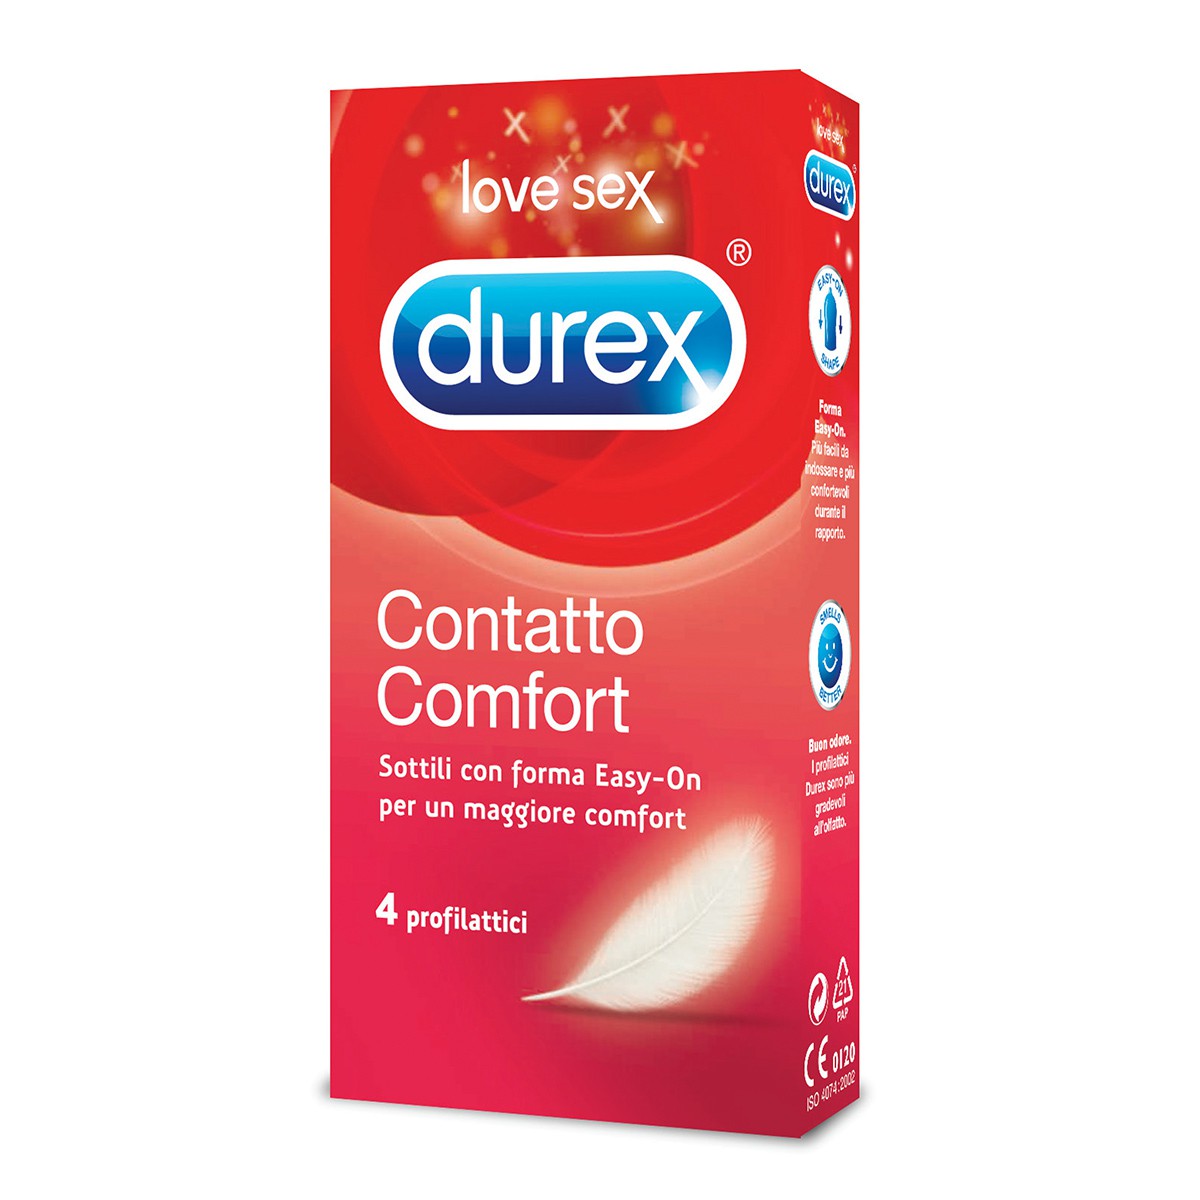 DUREX 12 preservativi contatto comfort profilattici molto lubrificati con forma \"Easy-on\"